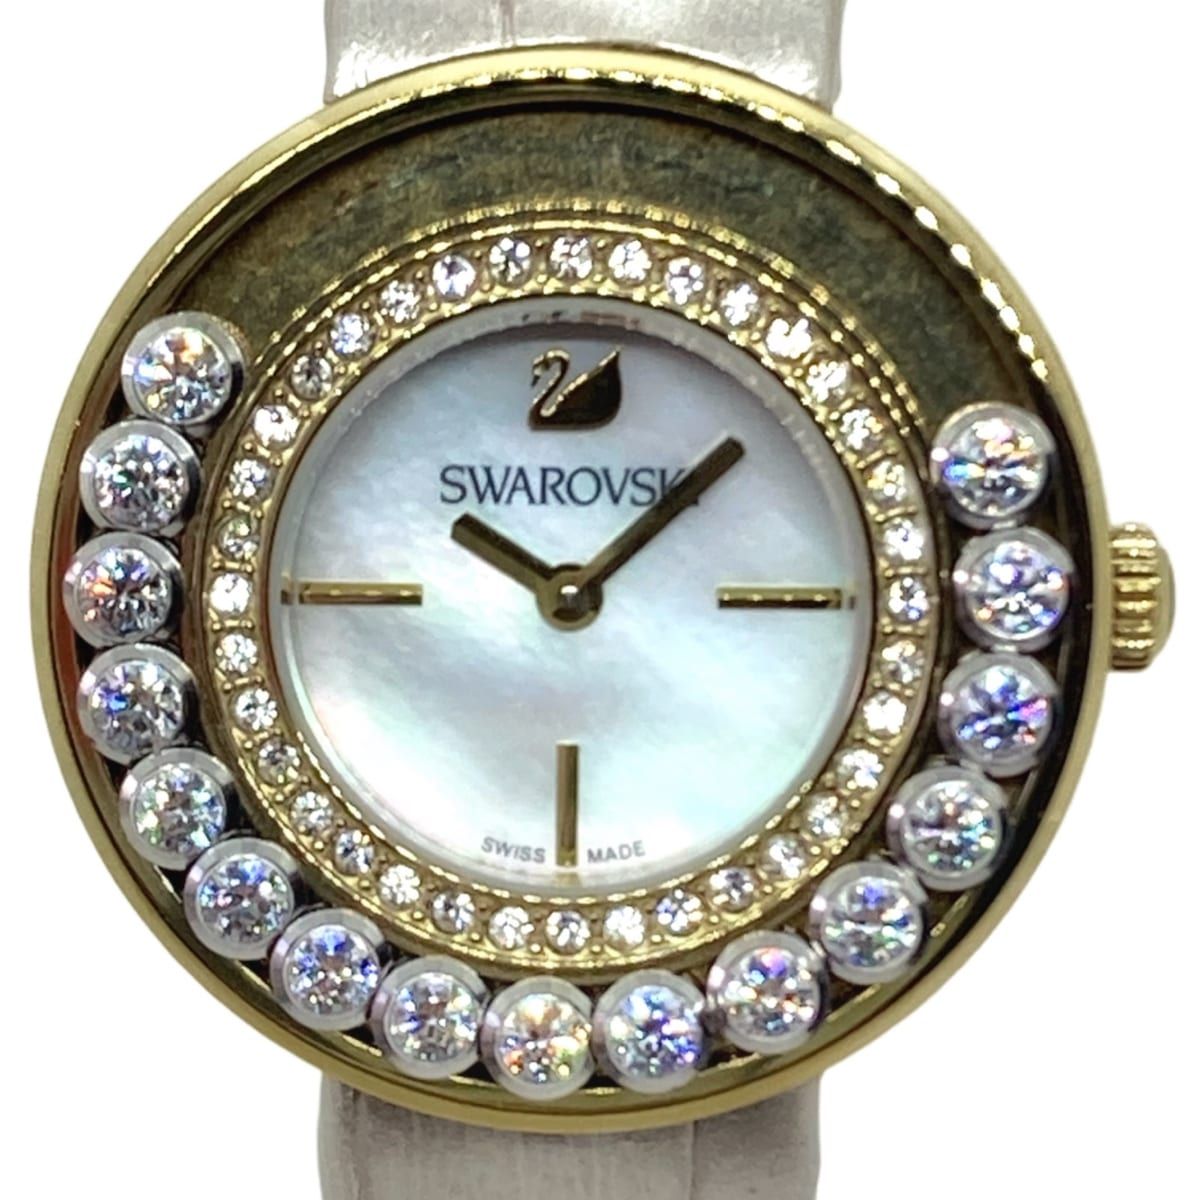 SWAROVSKI(スワロフスキー) 腕時計 ラブリークリスタル 5027203 レディース スワロフスキークリスタルベゼル ホワイトシェル